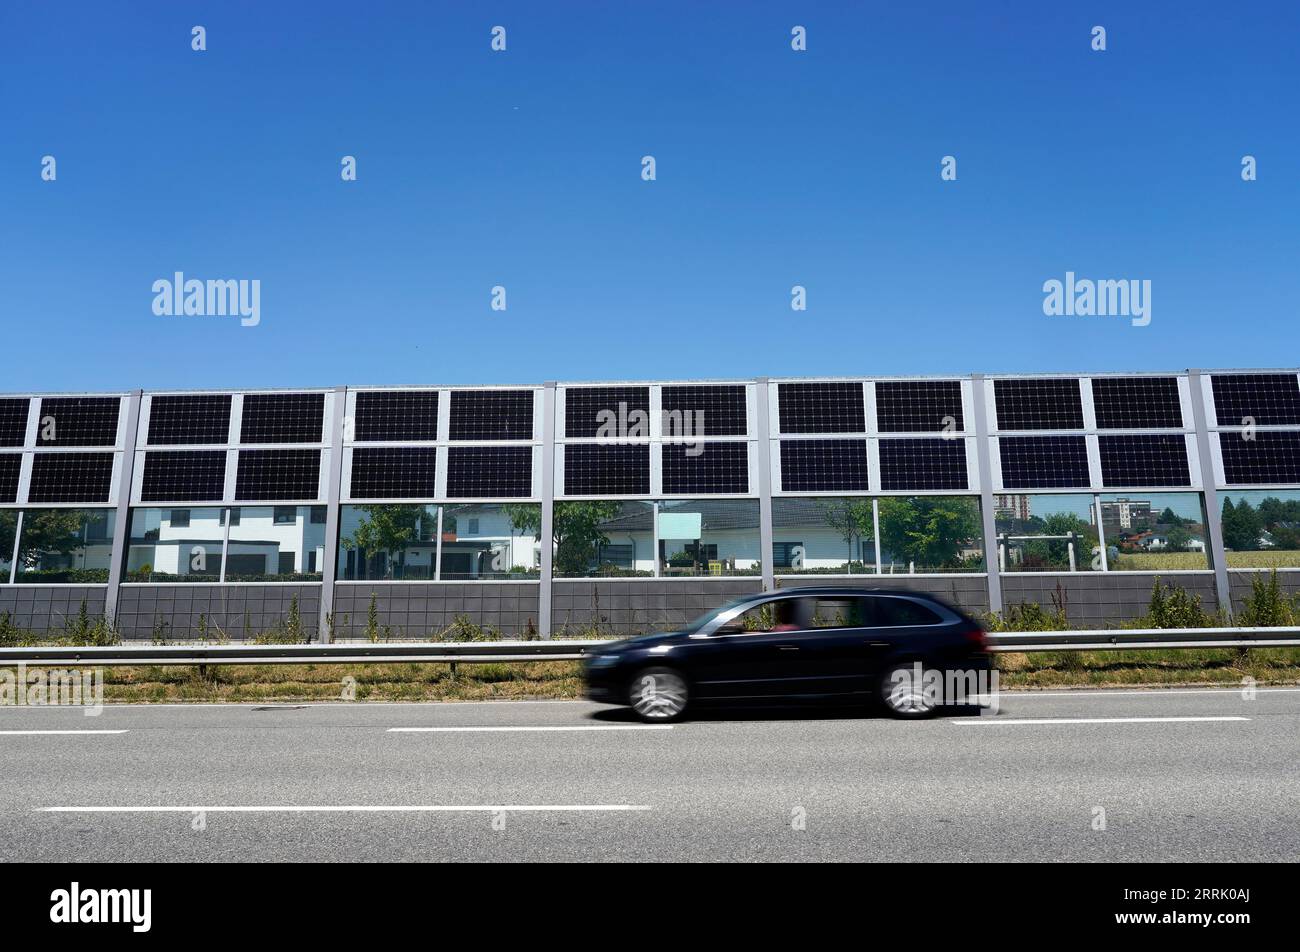 Deutschland, Bayern, Oberbayern, Neuötting, Wohnsiedlung, davor Schallmauer mit Photovoltaik, Straße, vorbeifahrendes Auto Stockfoto